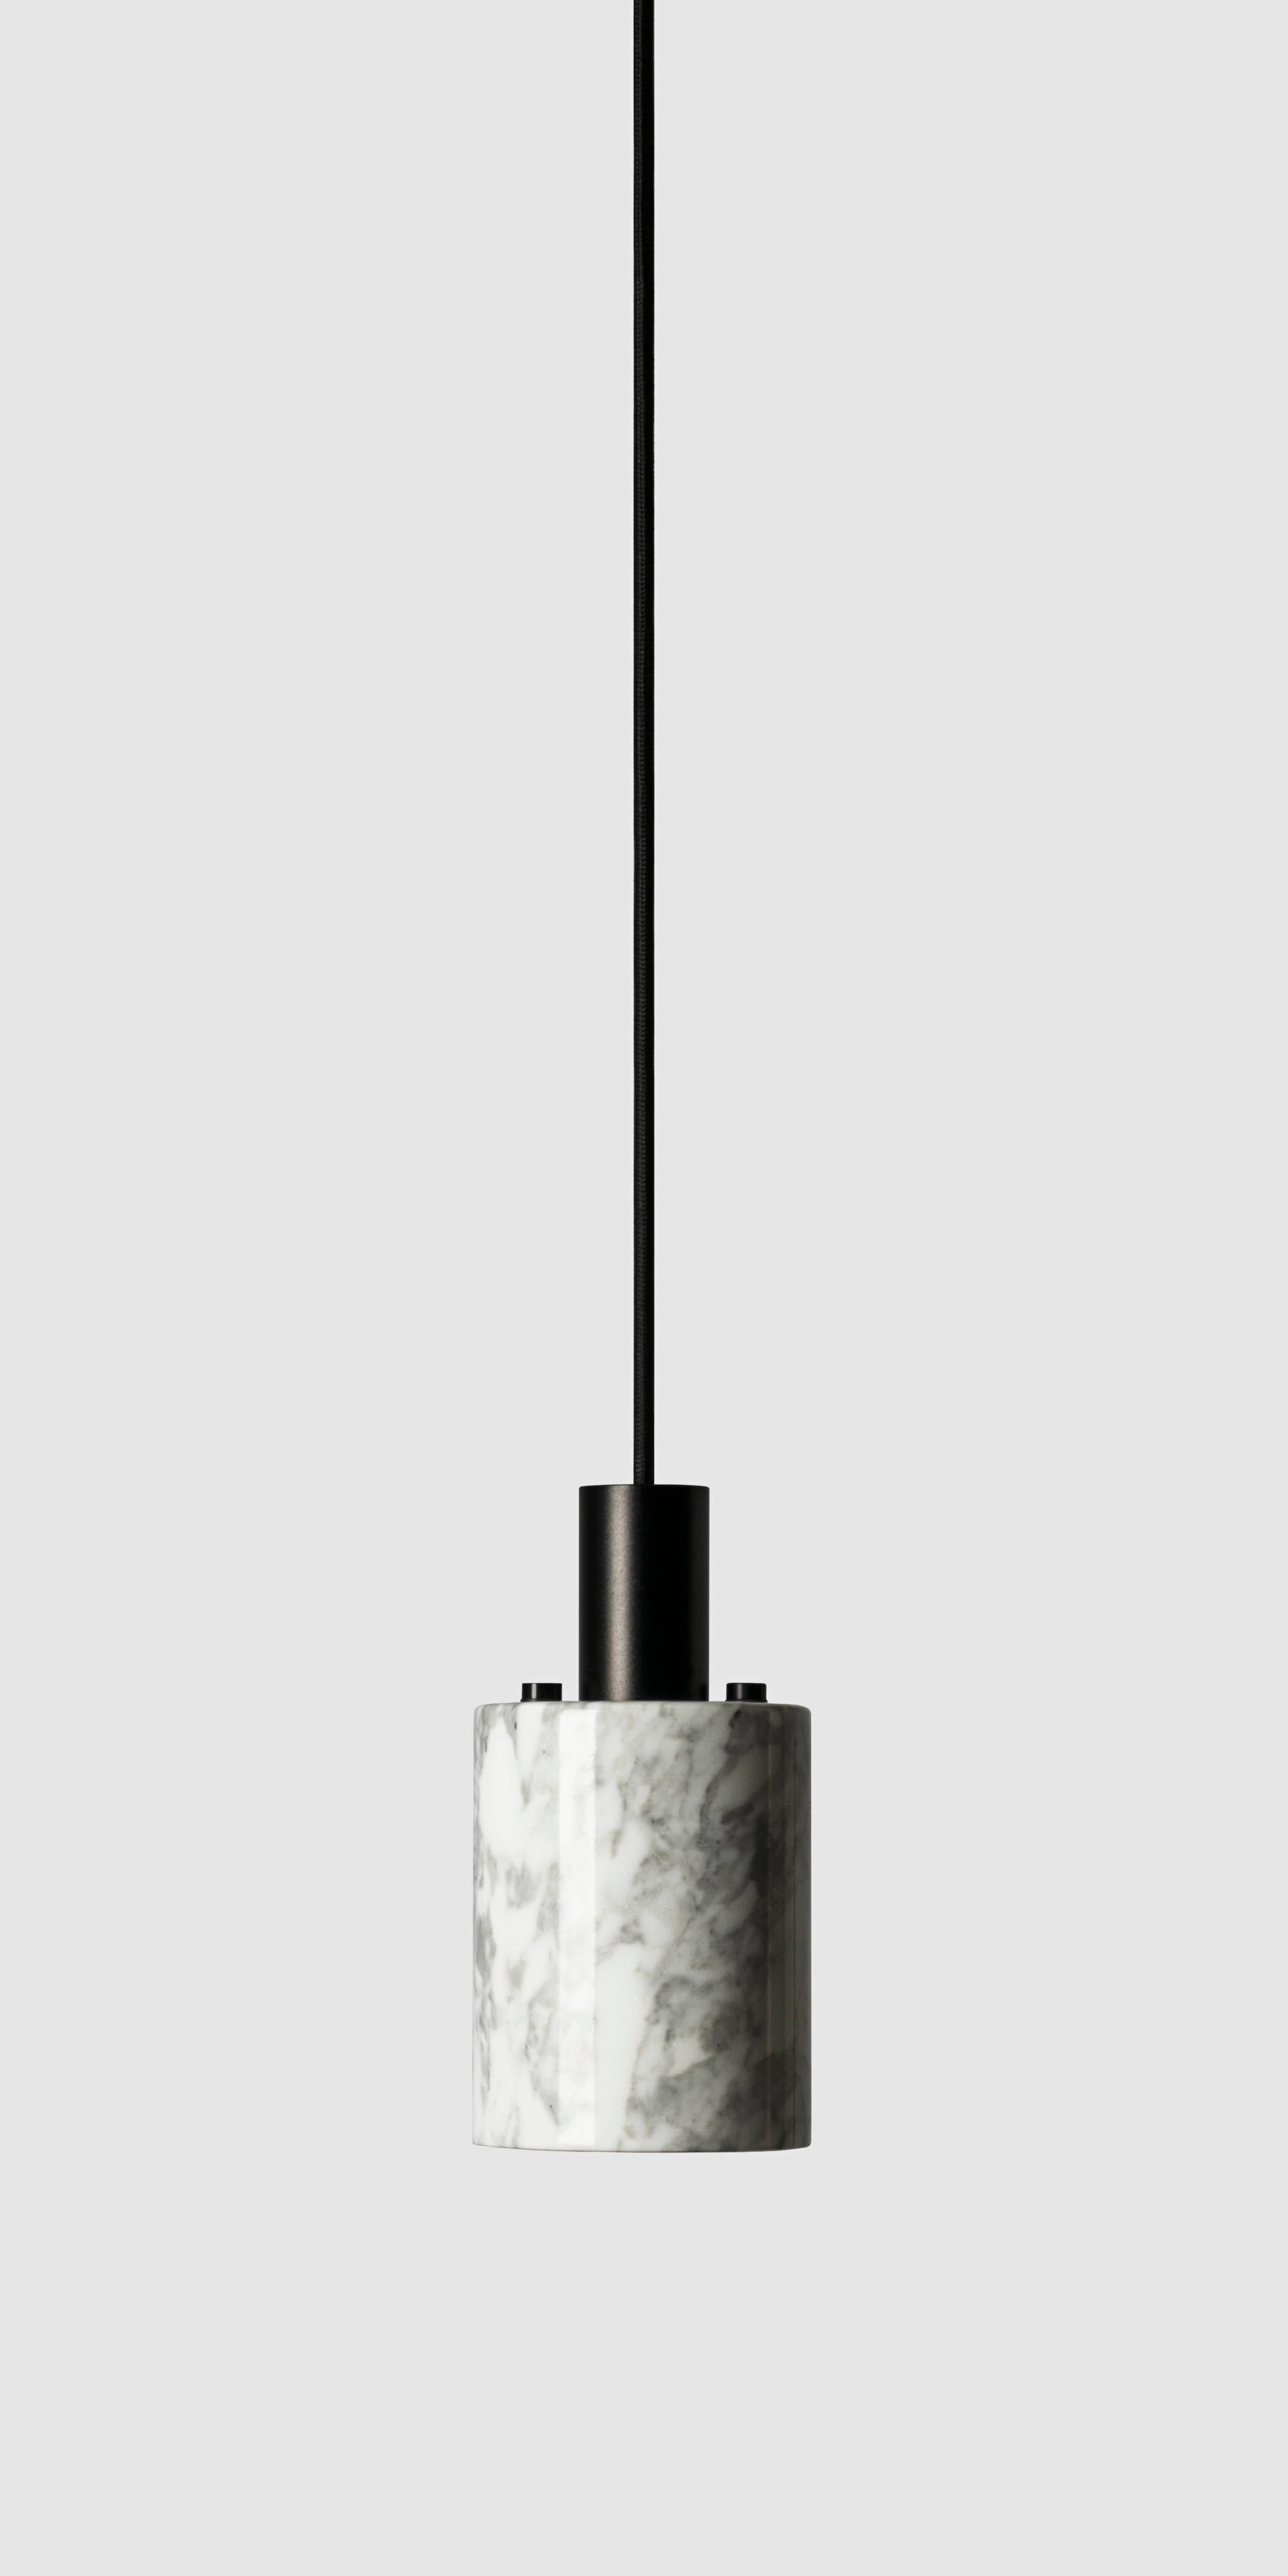 Lampes suspendues 'N' par Buzao x Bentu design.

Pierre de lave noire ou marbre blanc
Finition noire (aluminium) ou dorée (laiton)

(Vendu individuellement)

19.5 cm de haut, 10 cm de diamètre
Fil : 2 mètres noir (réglable) 

Type de lampe : E27 LED